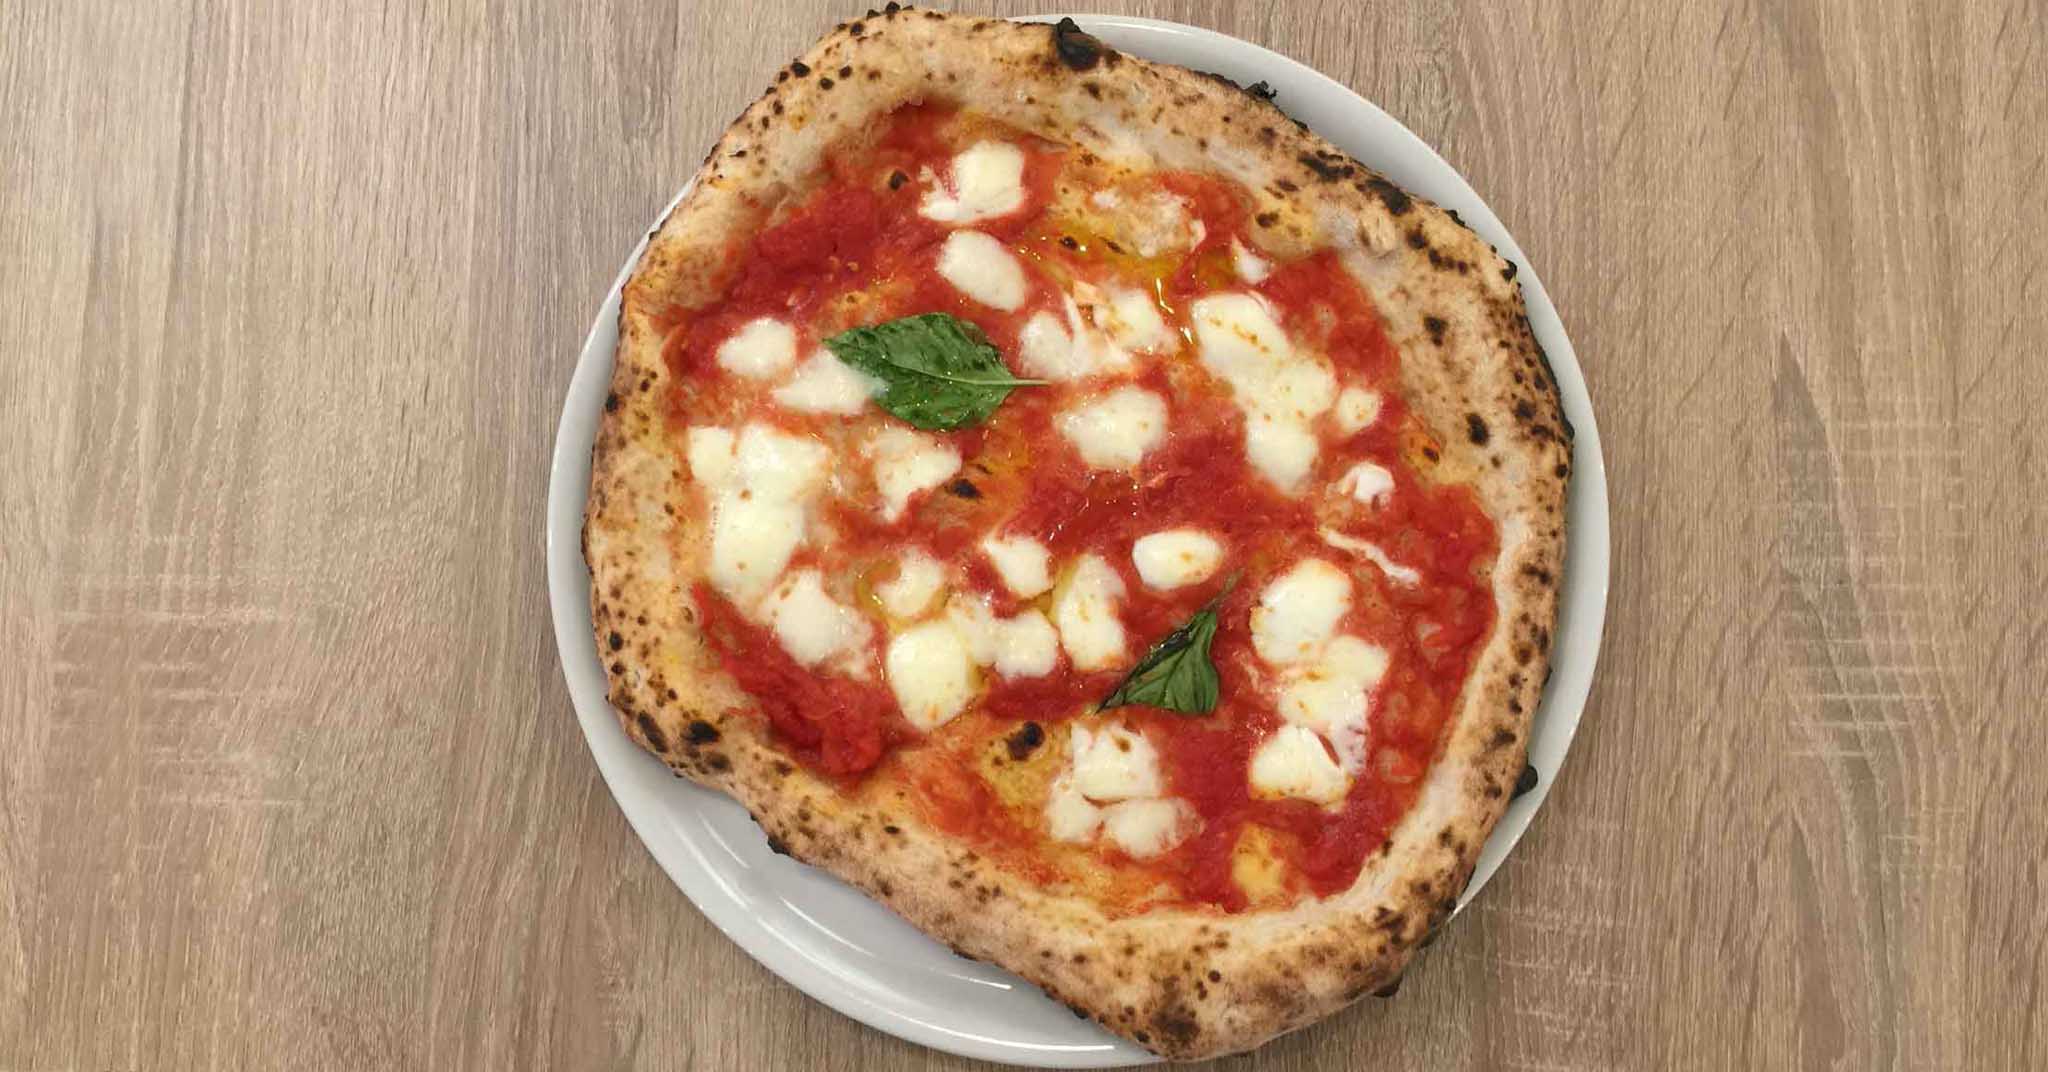 Miglior pizzeria d'Italia, Napoli beffata: vince ancora Caserta